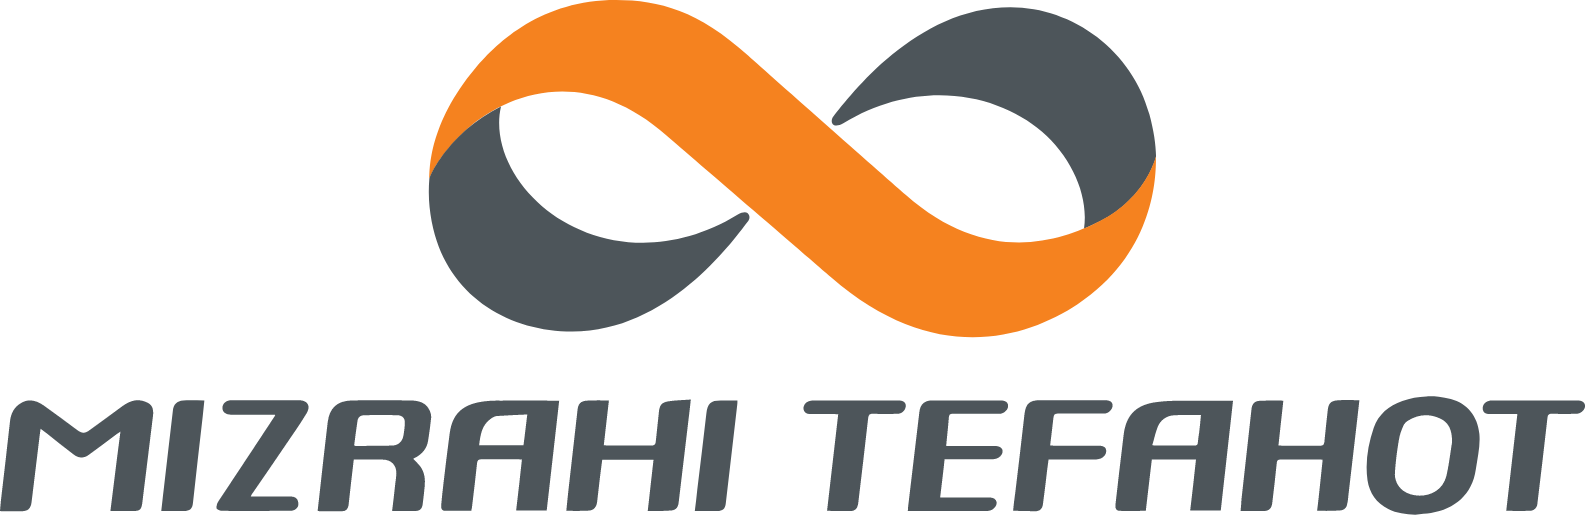 Mizrahi-Tefahot logo large (transparent PNG)